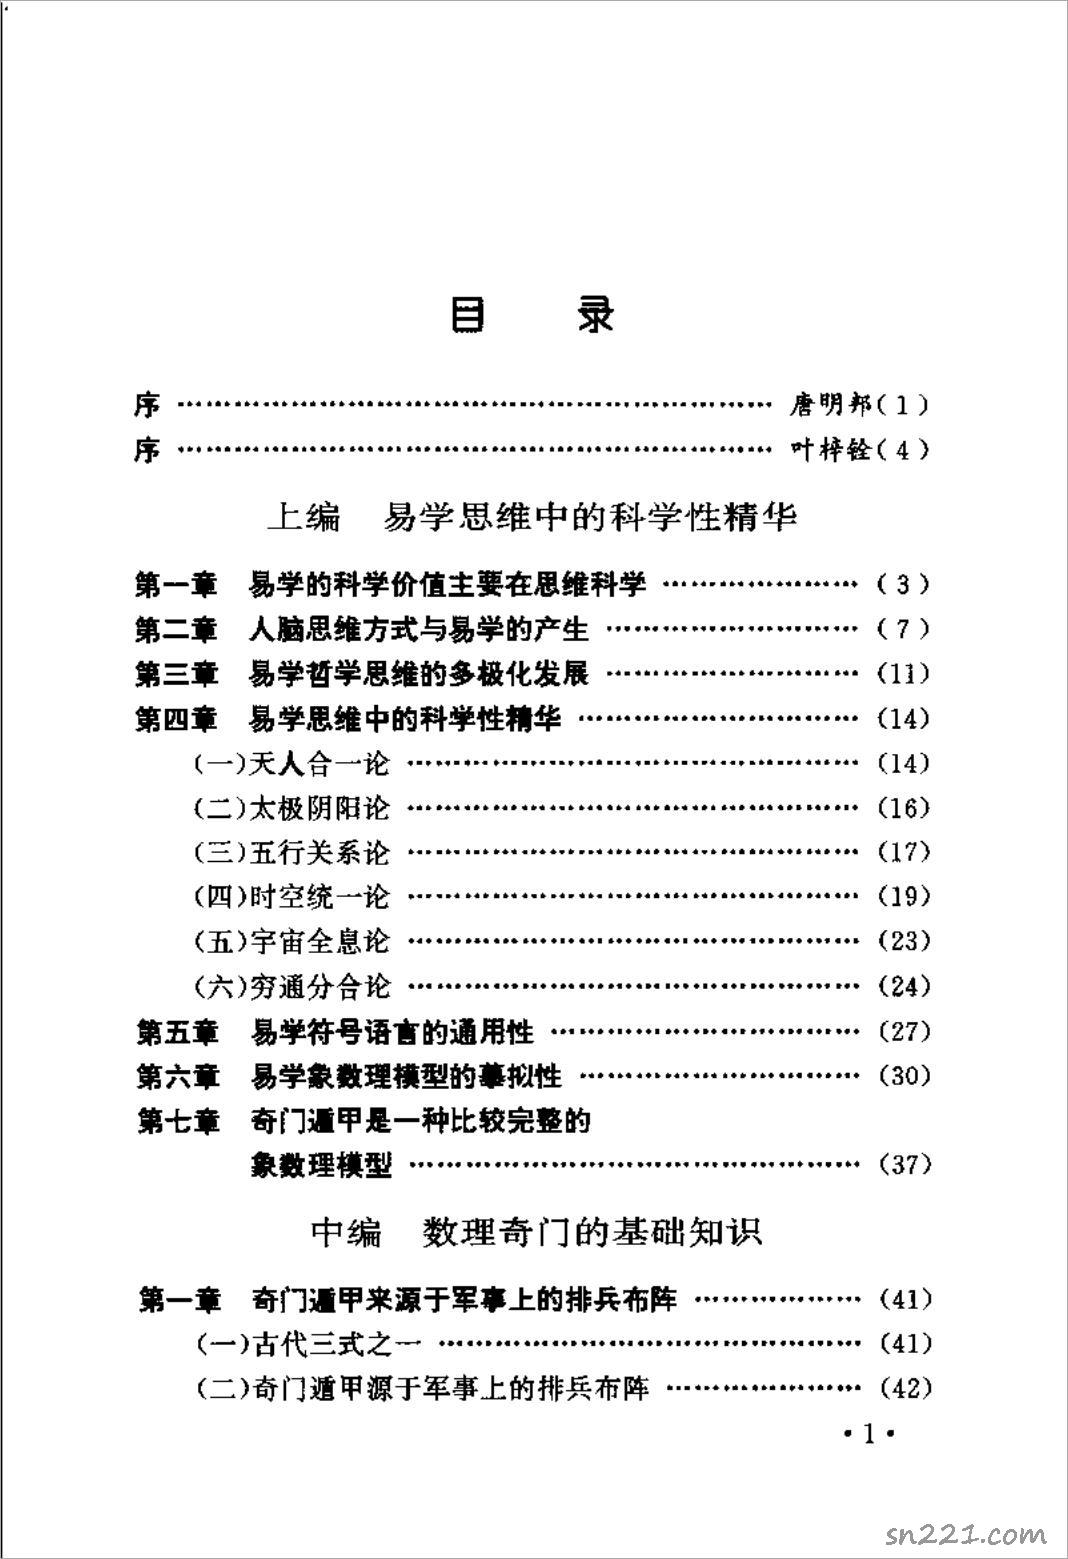 張志春著奇門遁甲入門教程神奇之門.pdf